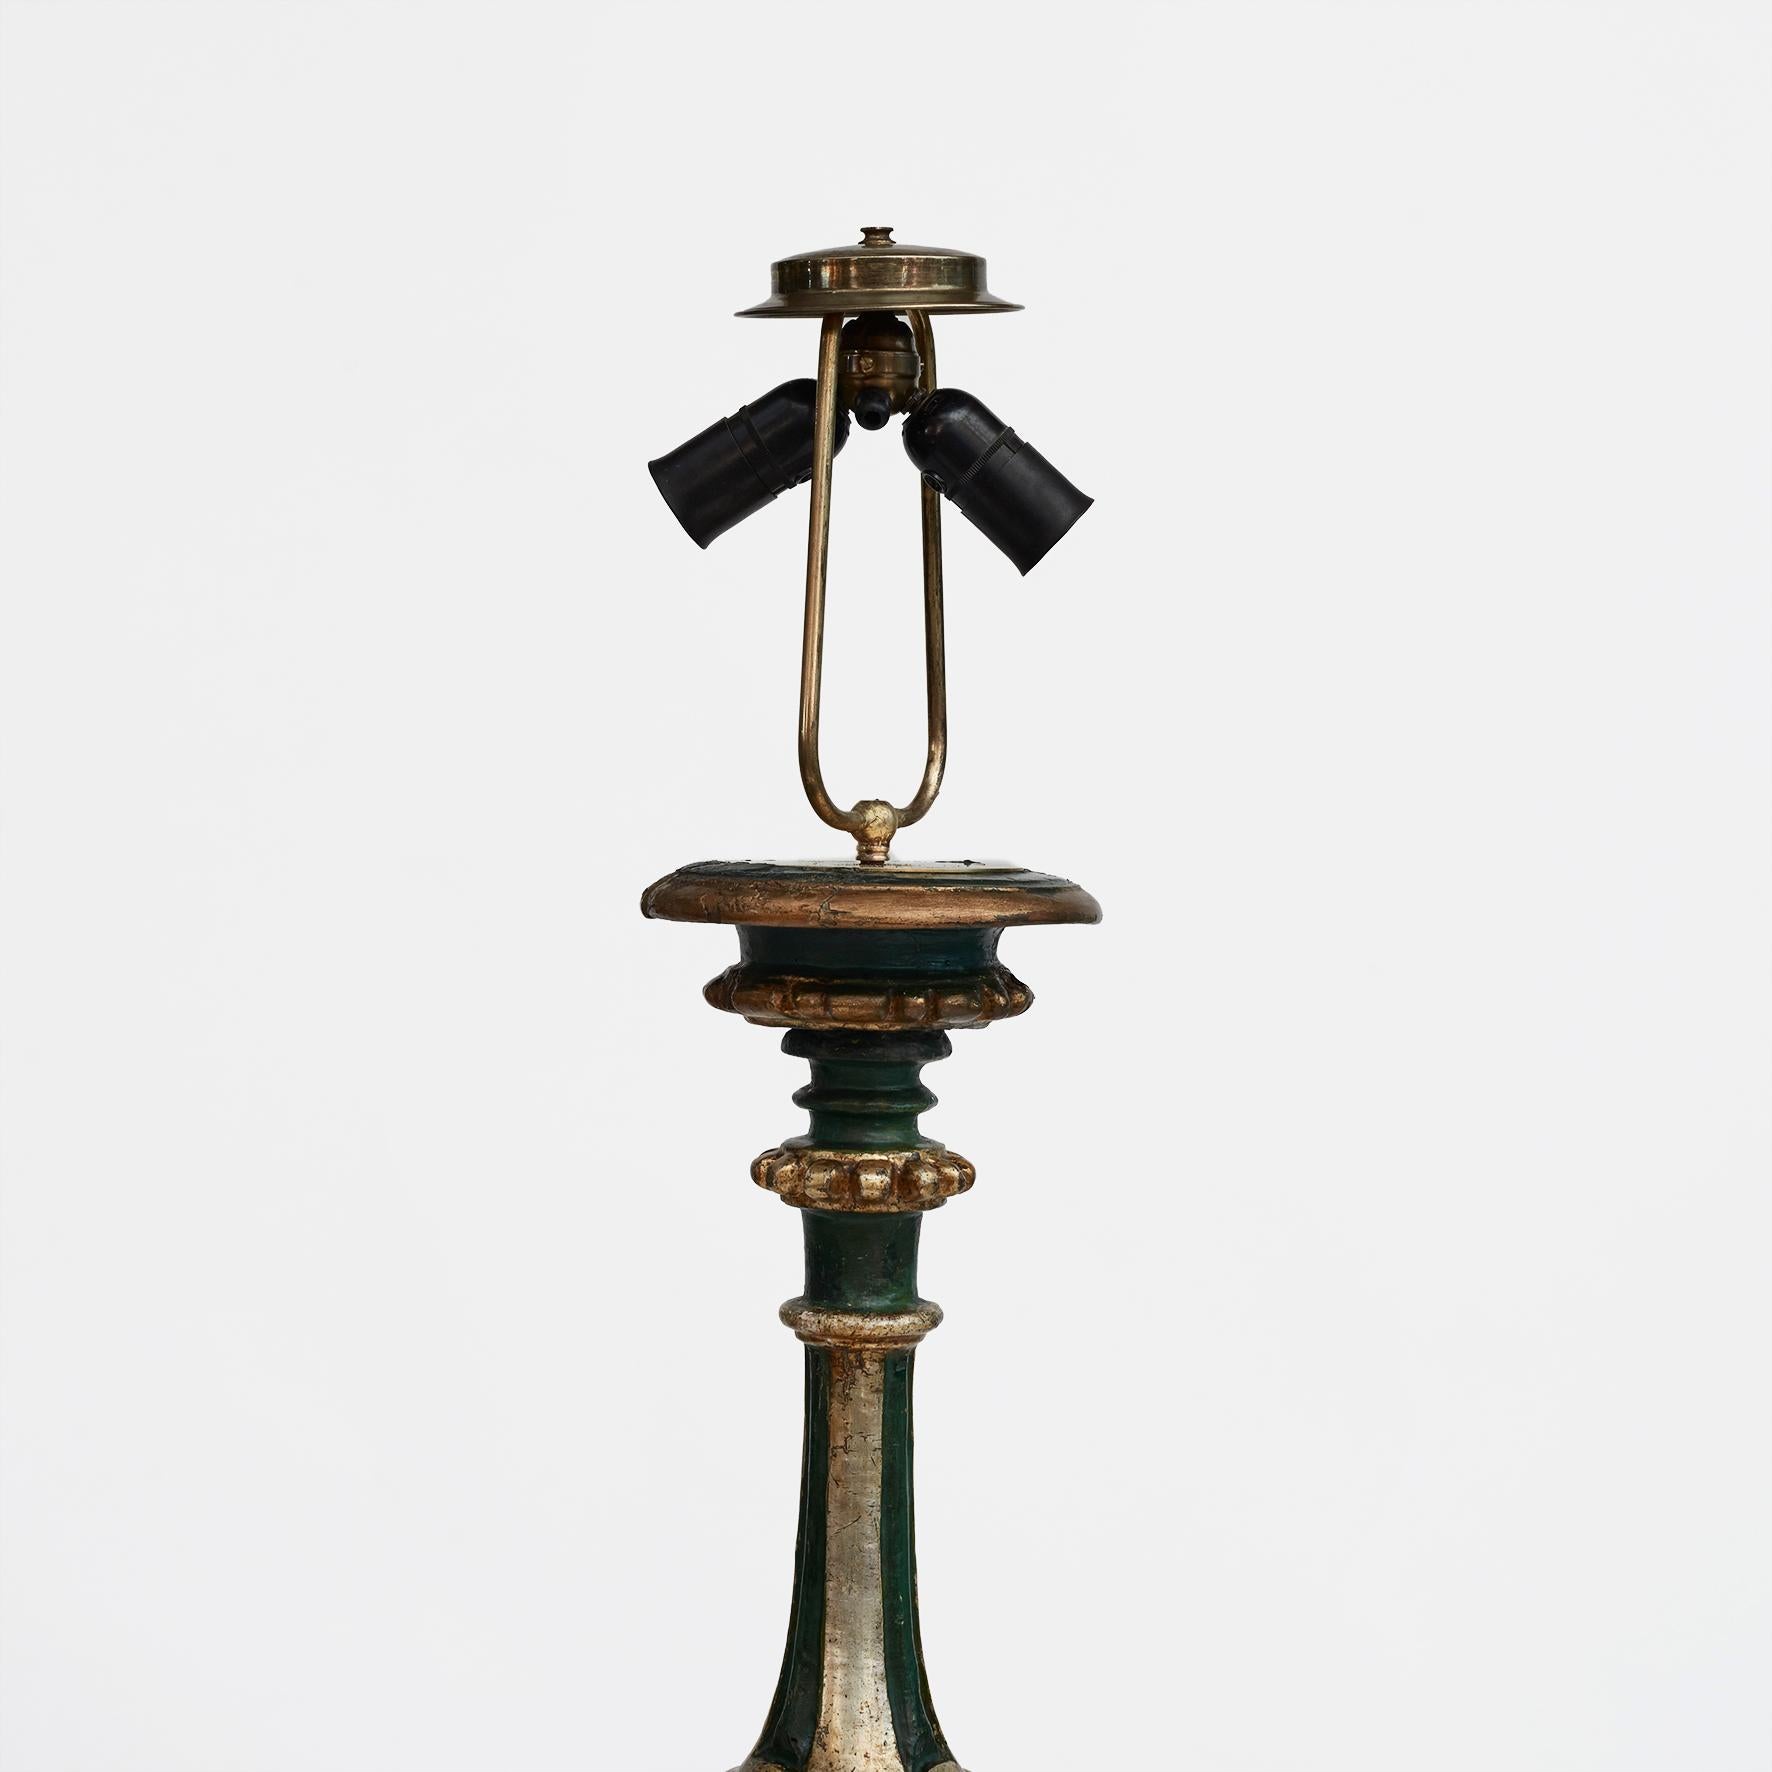 Eine dekorative italienische Stehlampe aus dem Barock des 18. Jahrhunderts.
Detailreich geschnitztes Holz, bemalt mit Grün, Vergoldung und Blattsilber.
In unberührtem und originalem Zustand mit schöner, altersbedingter Patina.

Die Lampe wurde vom